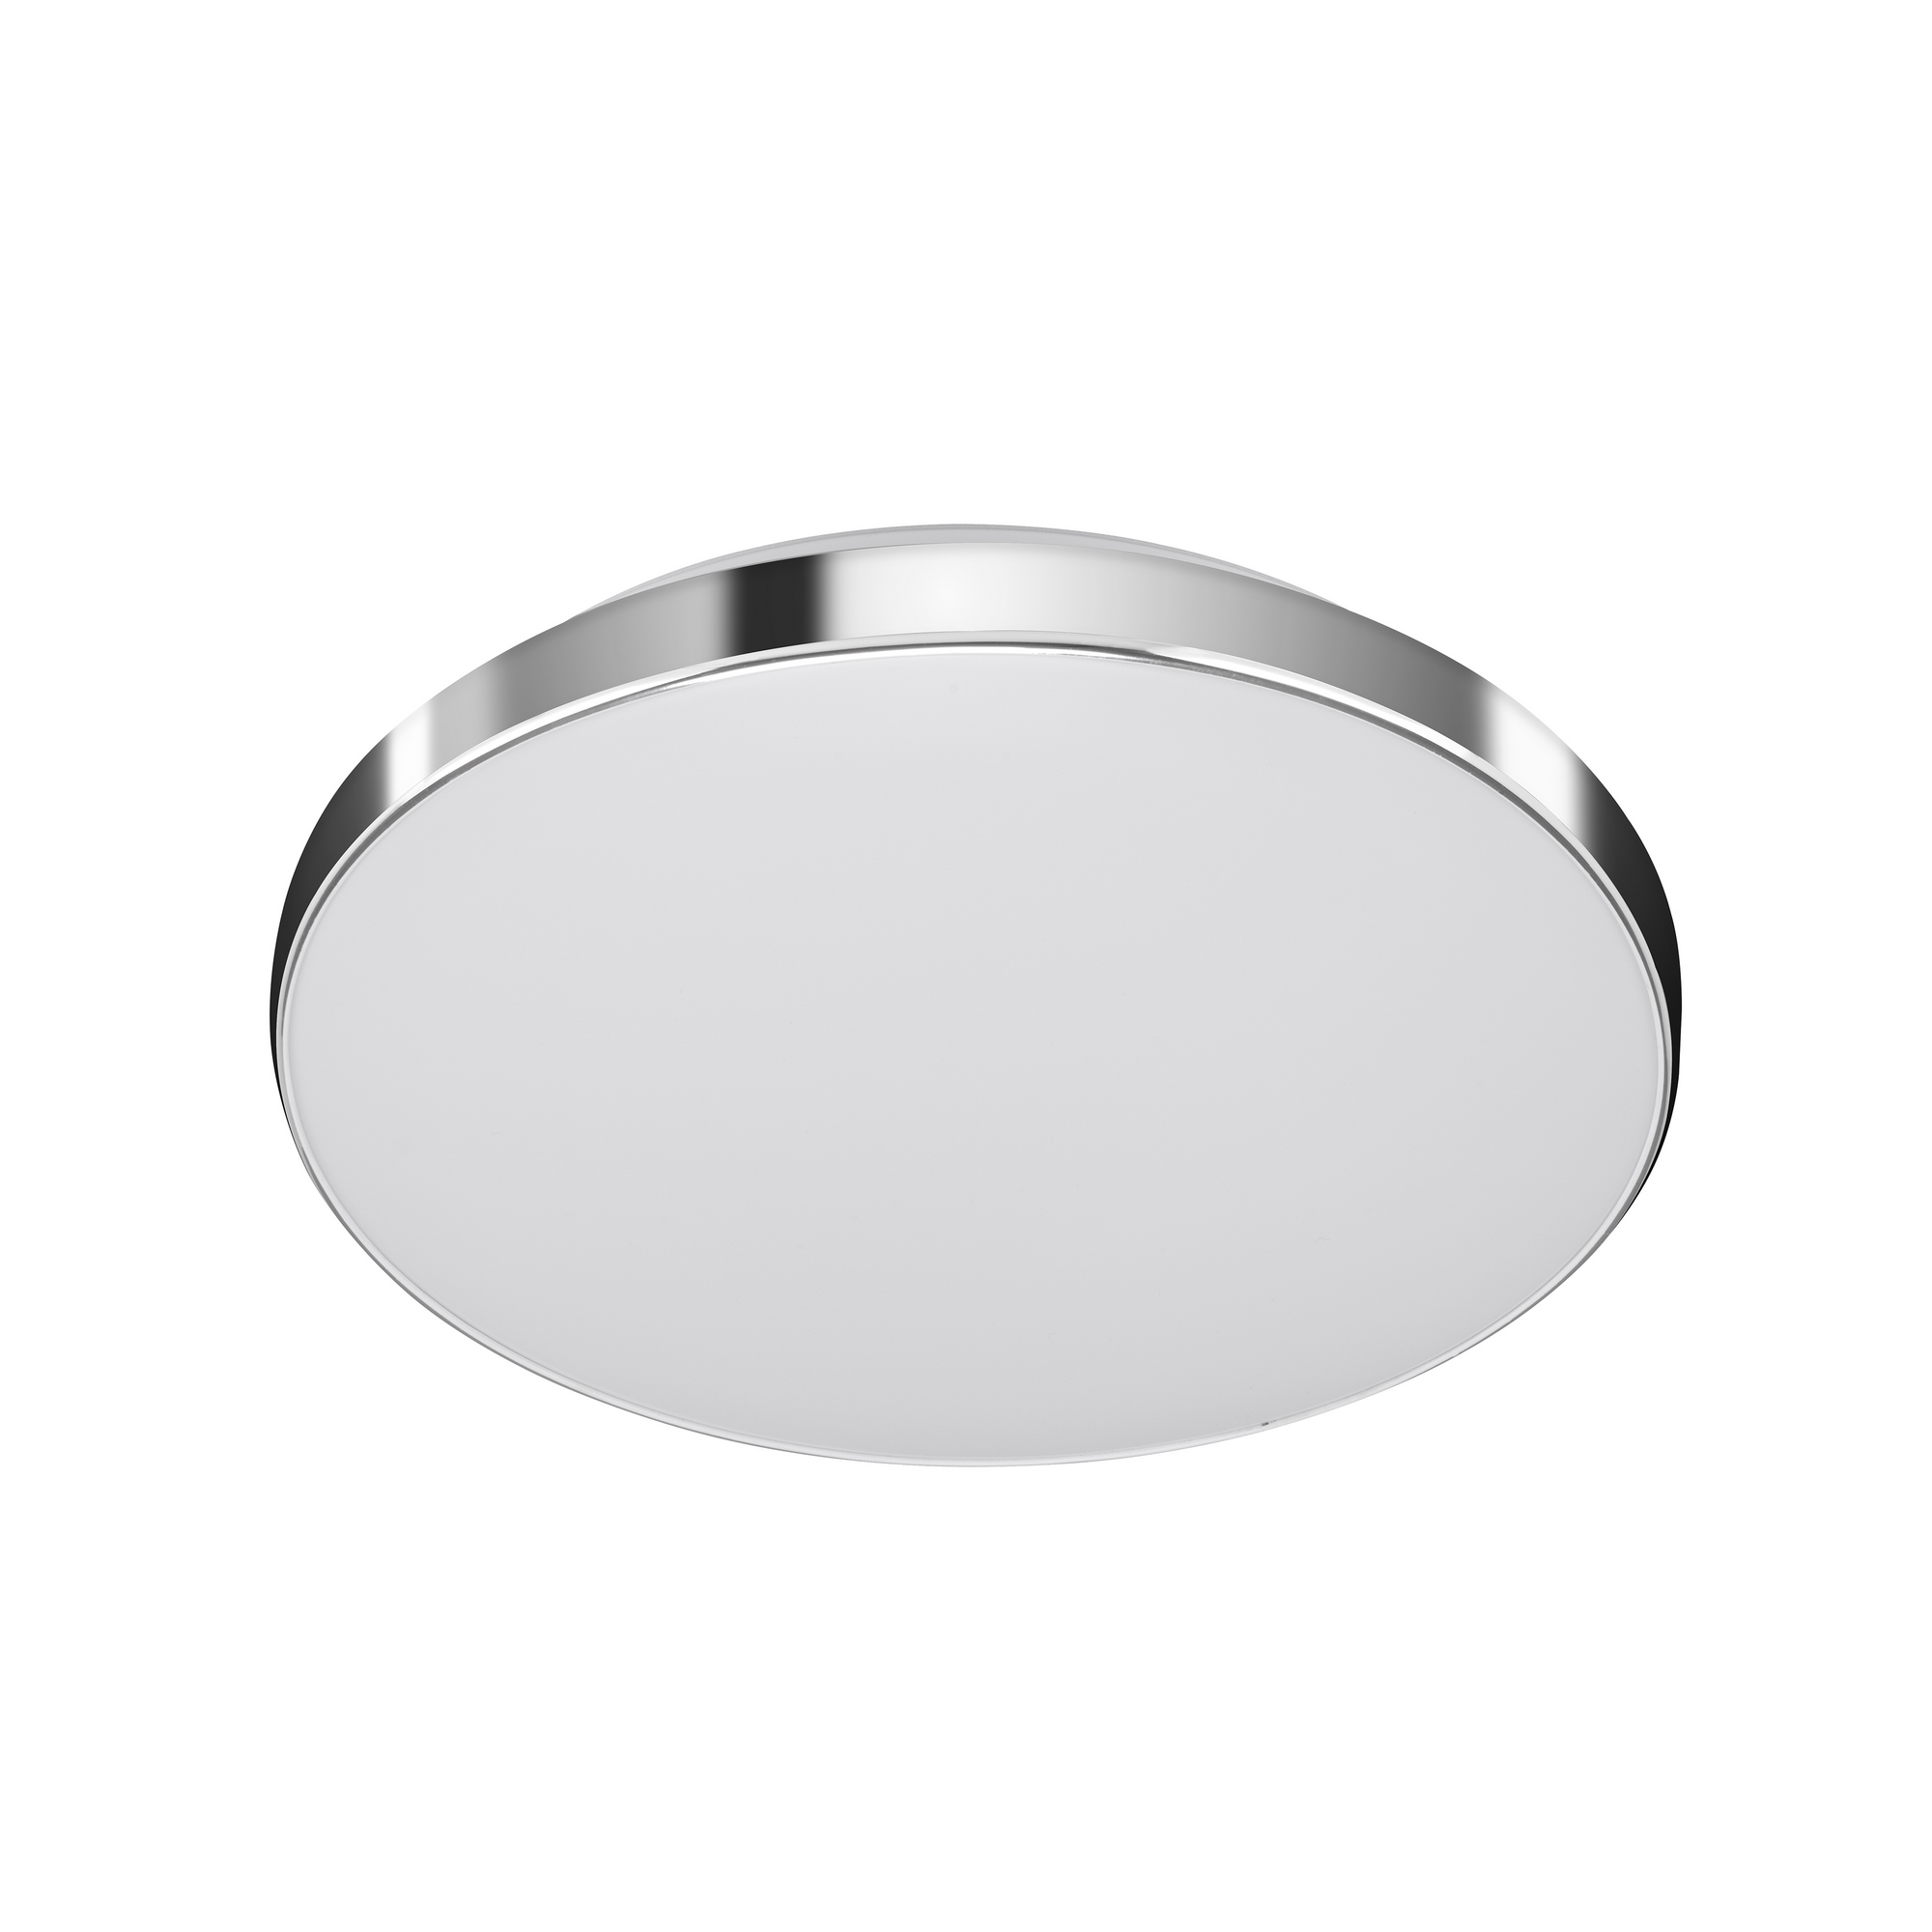 LED-Deckenleuchte 'Newa' weiß/chromfarben Ø 29 x 6,3 cm, mit Bewegungsmelder + product picture